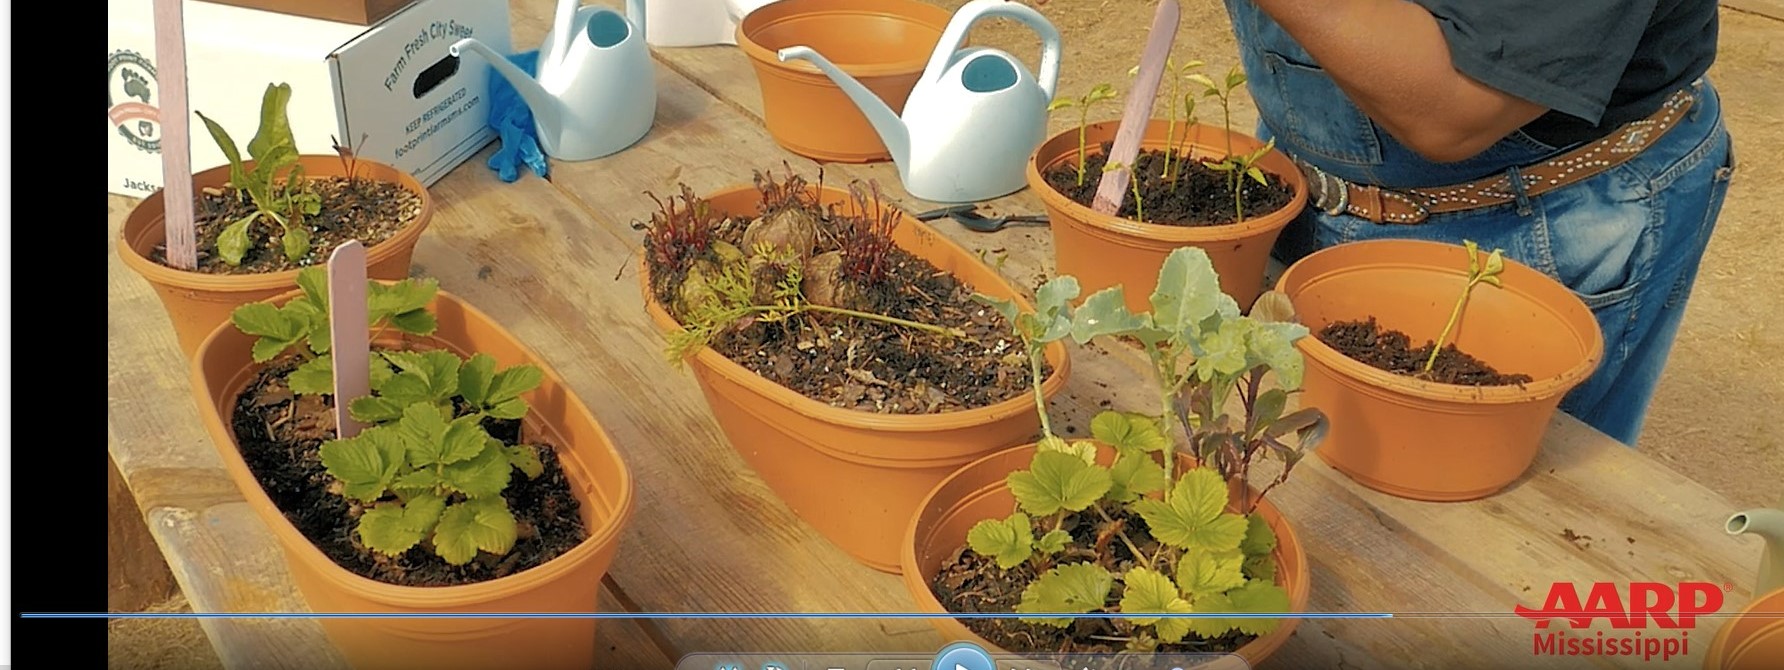 Virtual gardening series